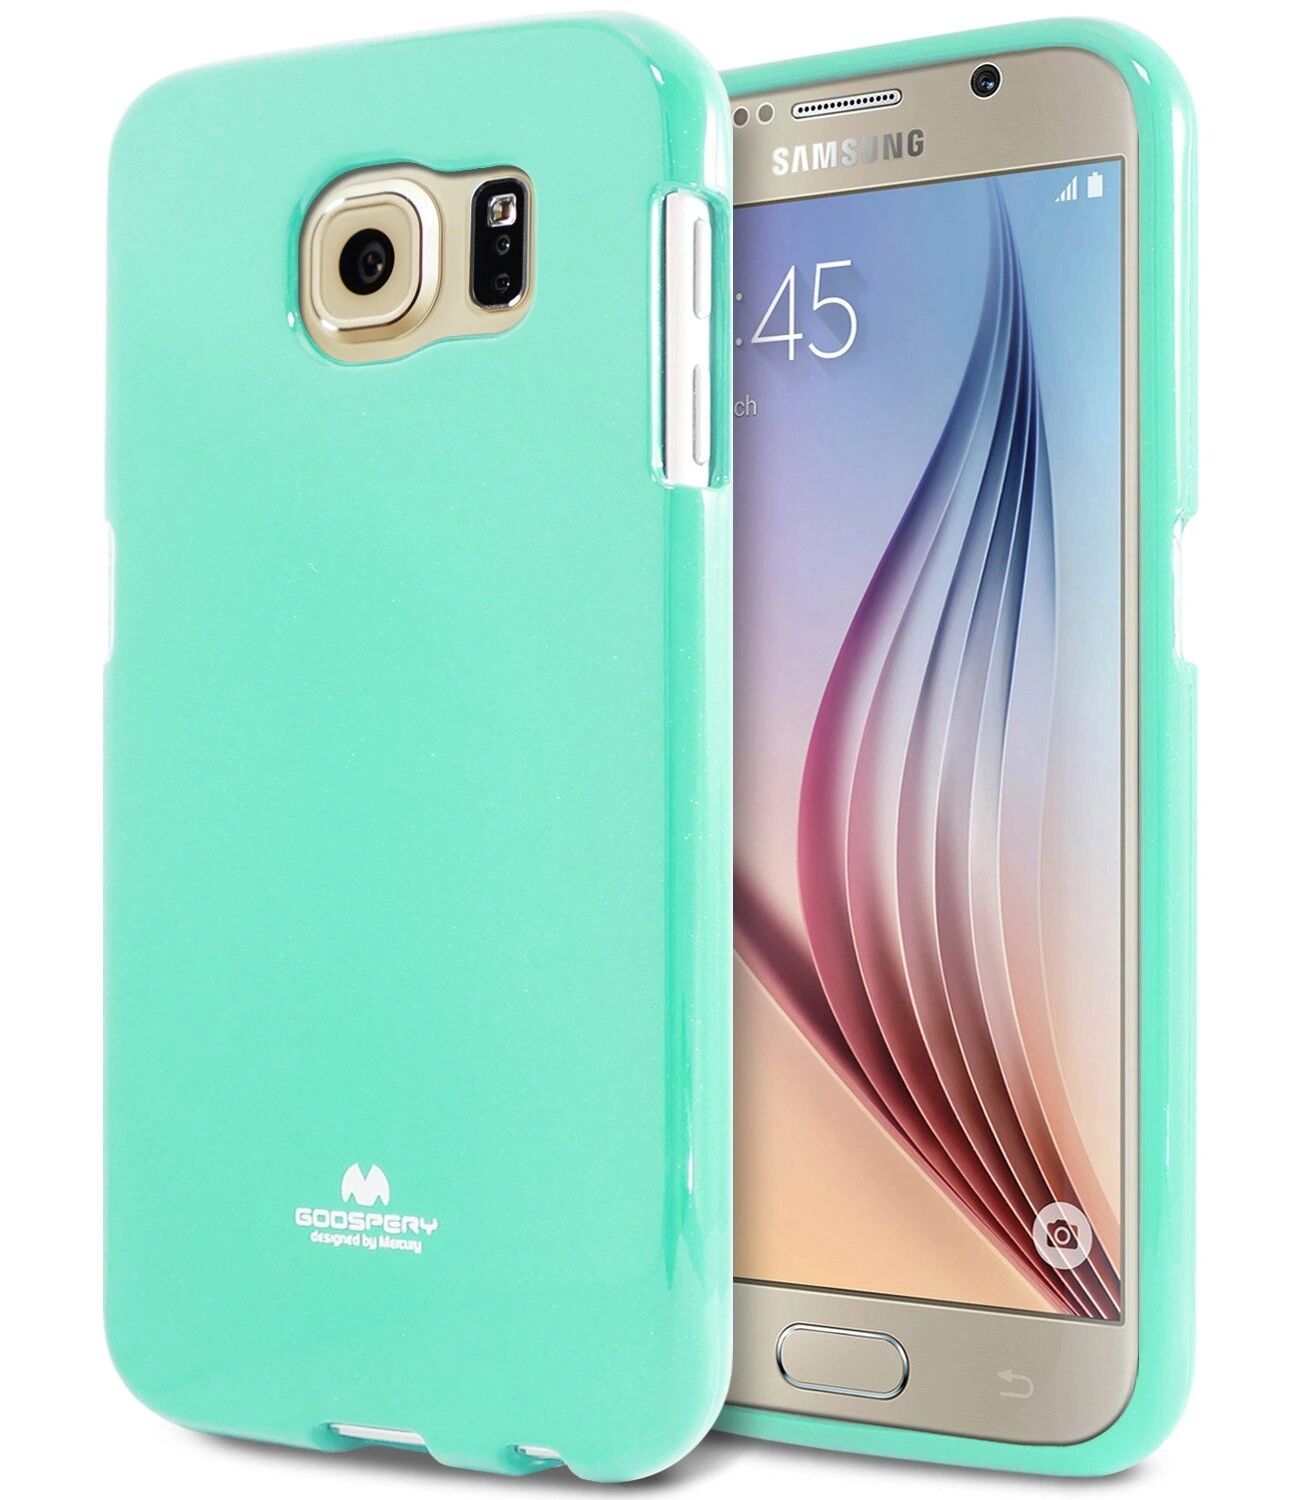 Mercury Pouzdro / kryt pro Samsung Galaxy S6 - Mercury, Jelly Mint